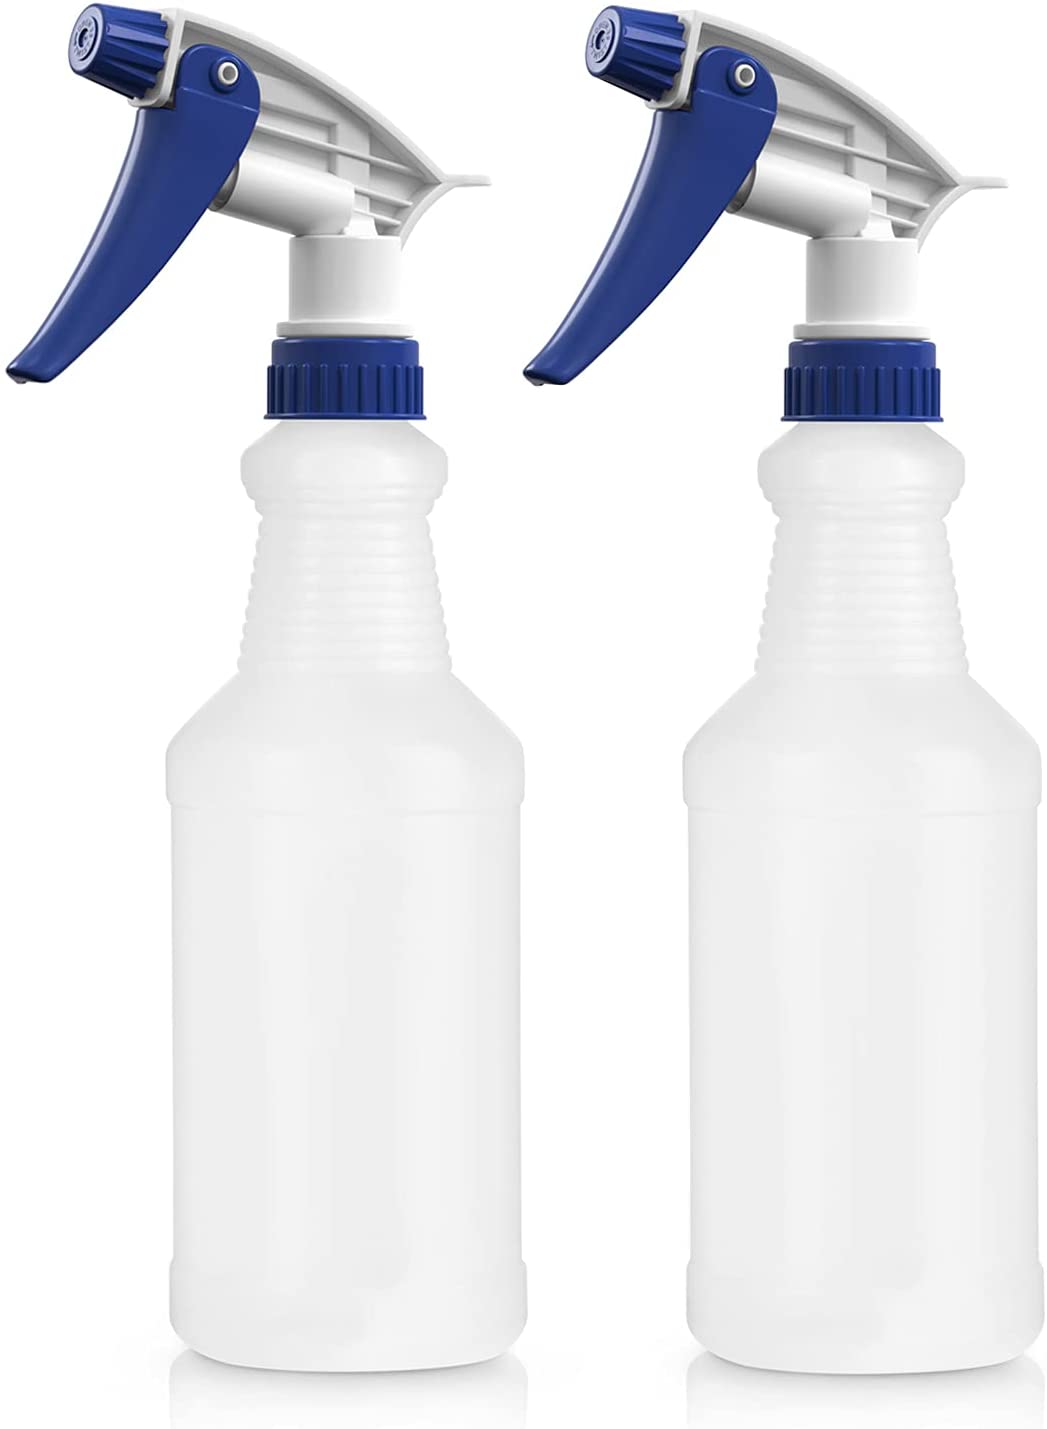 BAR5F Leak Proof Plastic Spray Bottle, 2-Pack